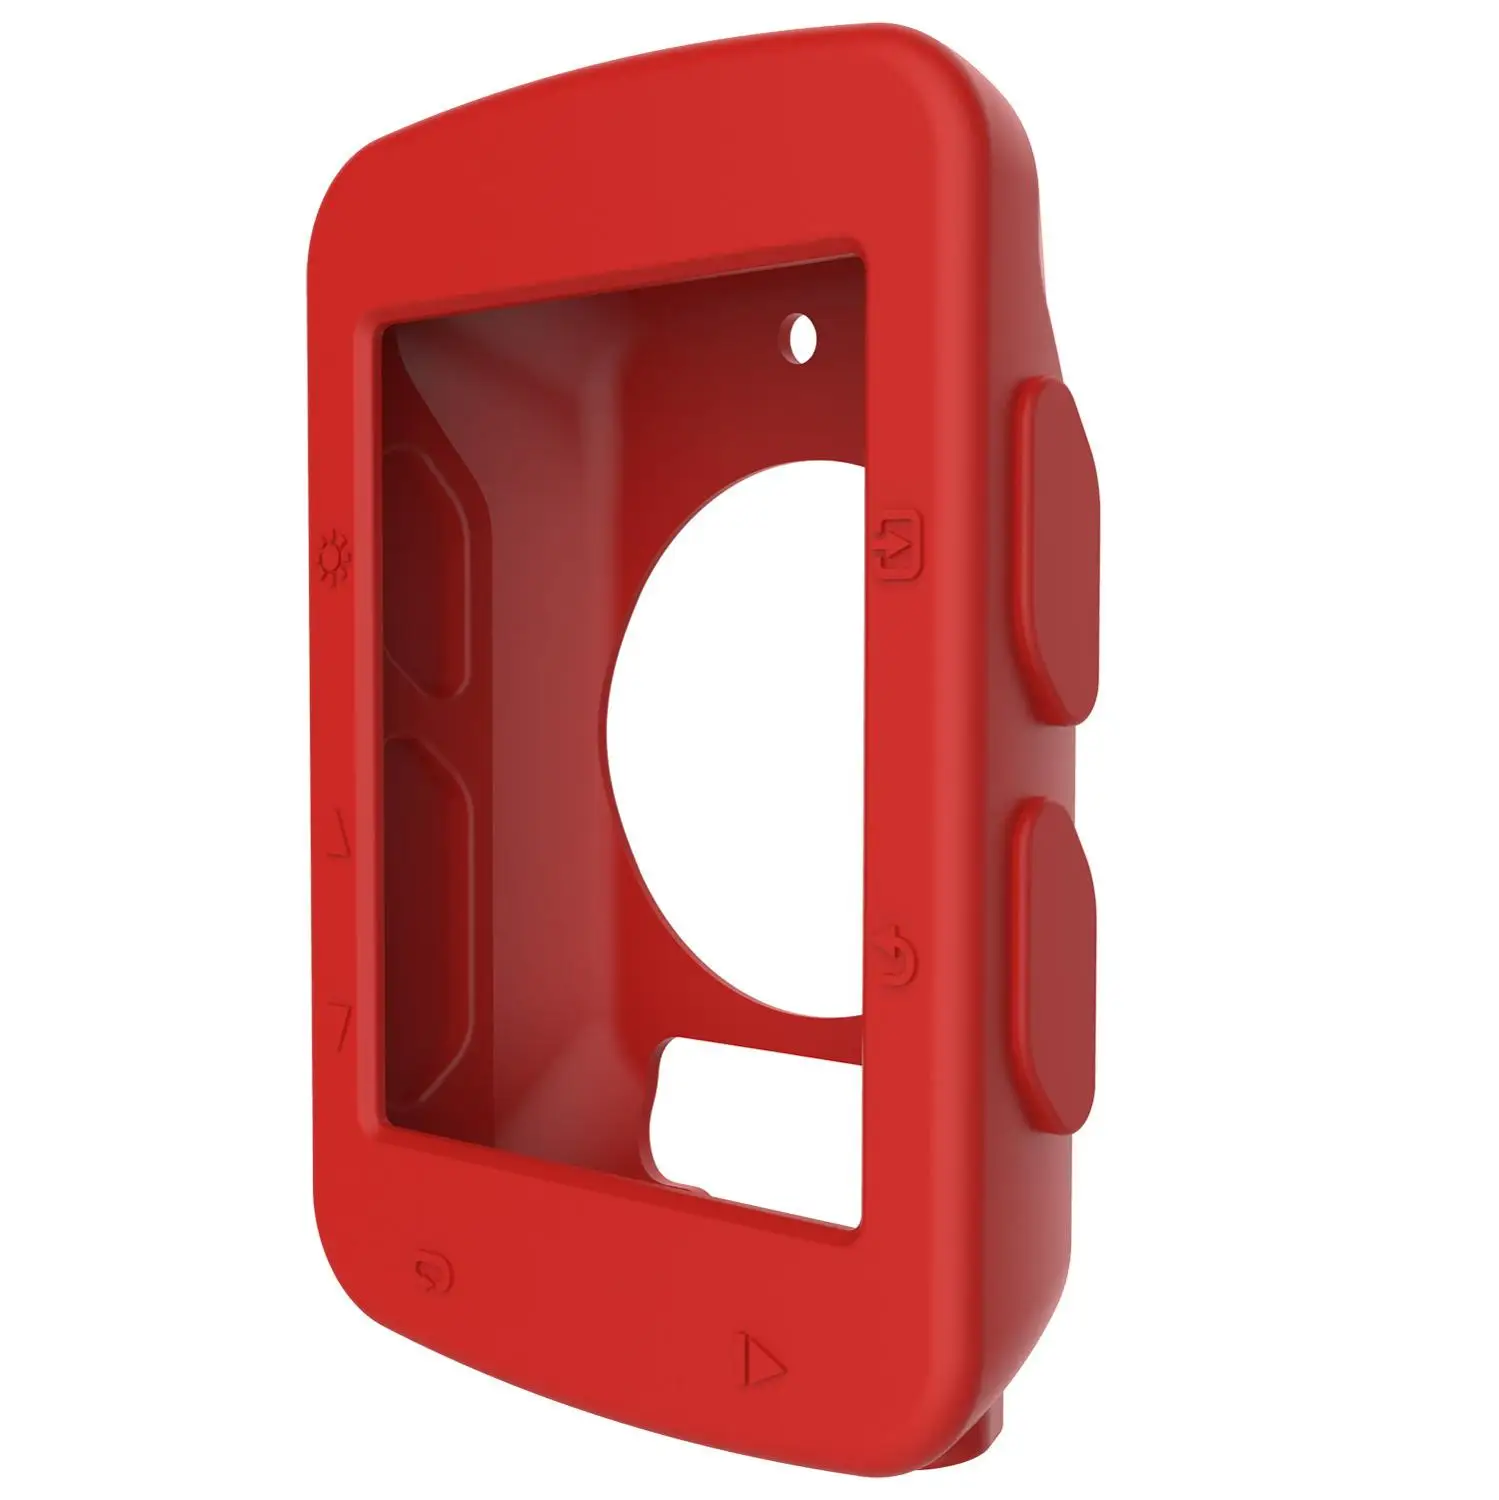 Funda protectora para cronómetro de bicicleta, carcasa de silicona para GPS, Garmin Edge 520, color rojo, envío gratis